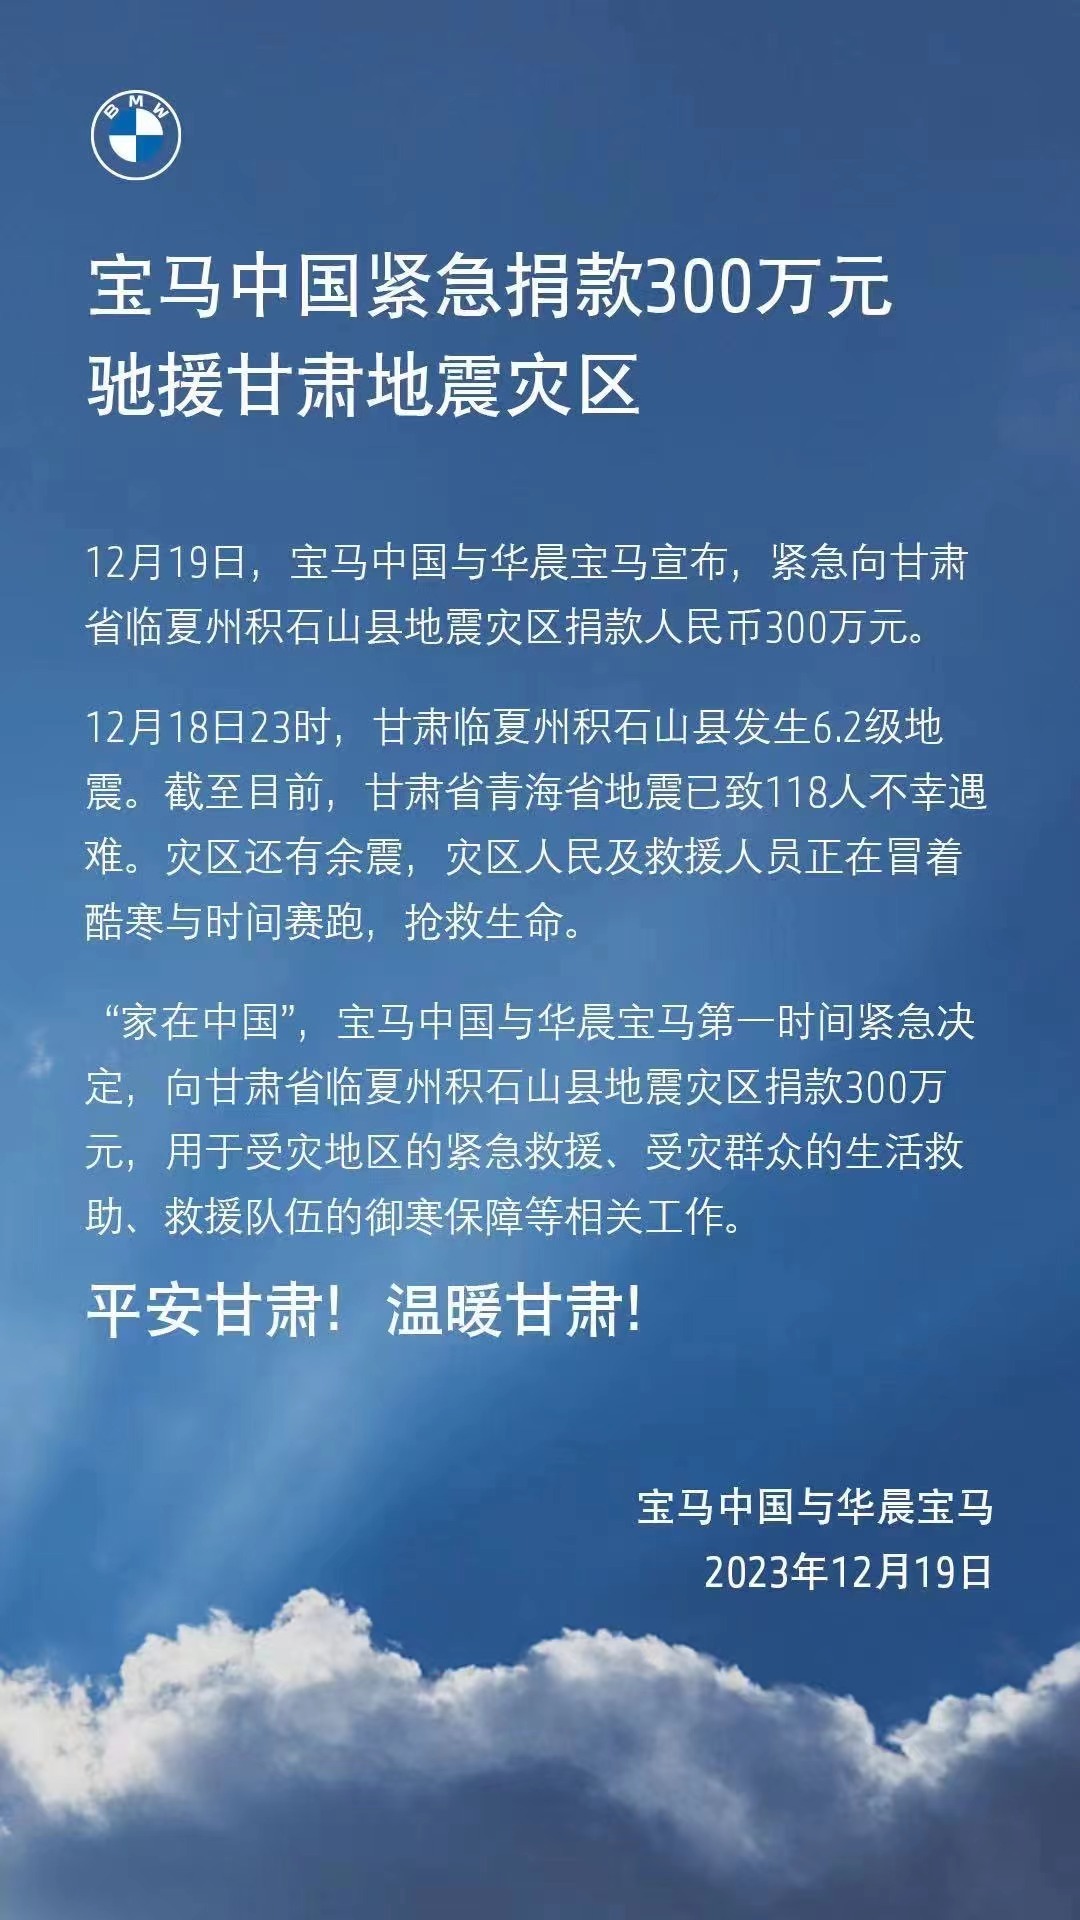 宝马中国捐款300万元驰援甘肃地震灾区